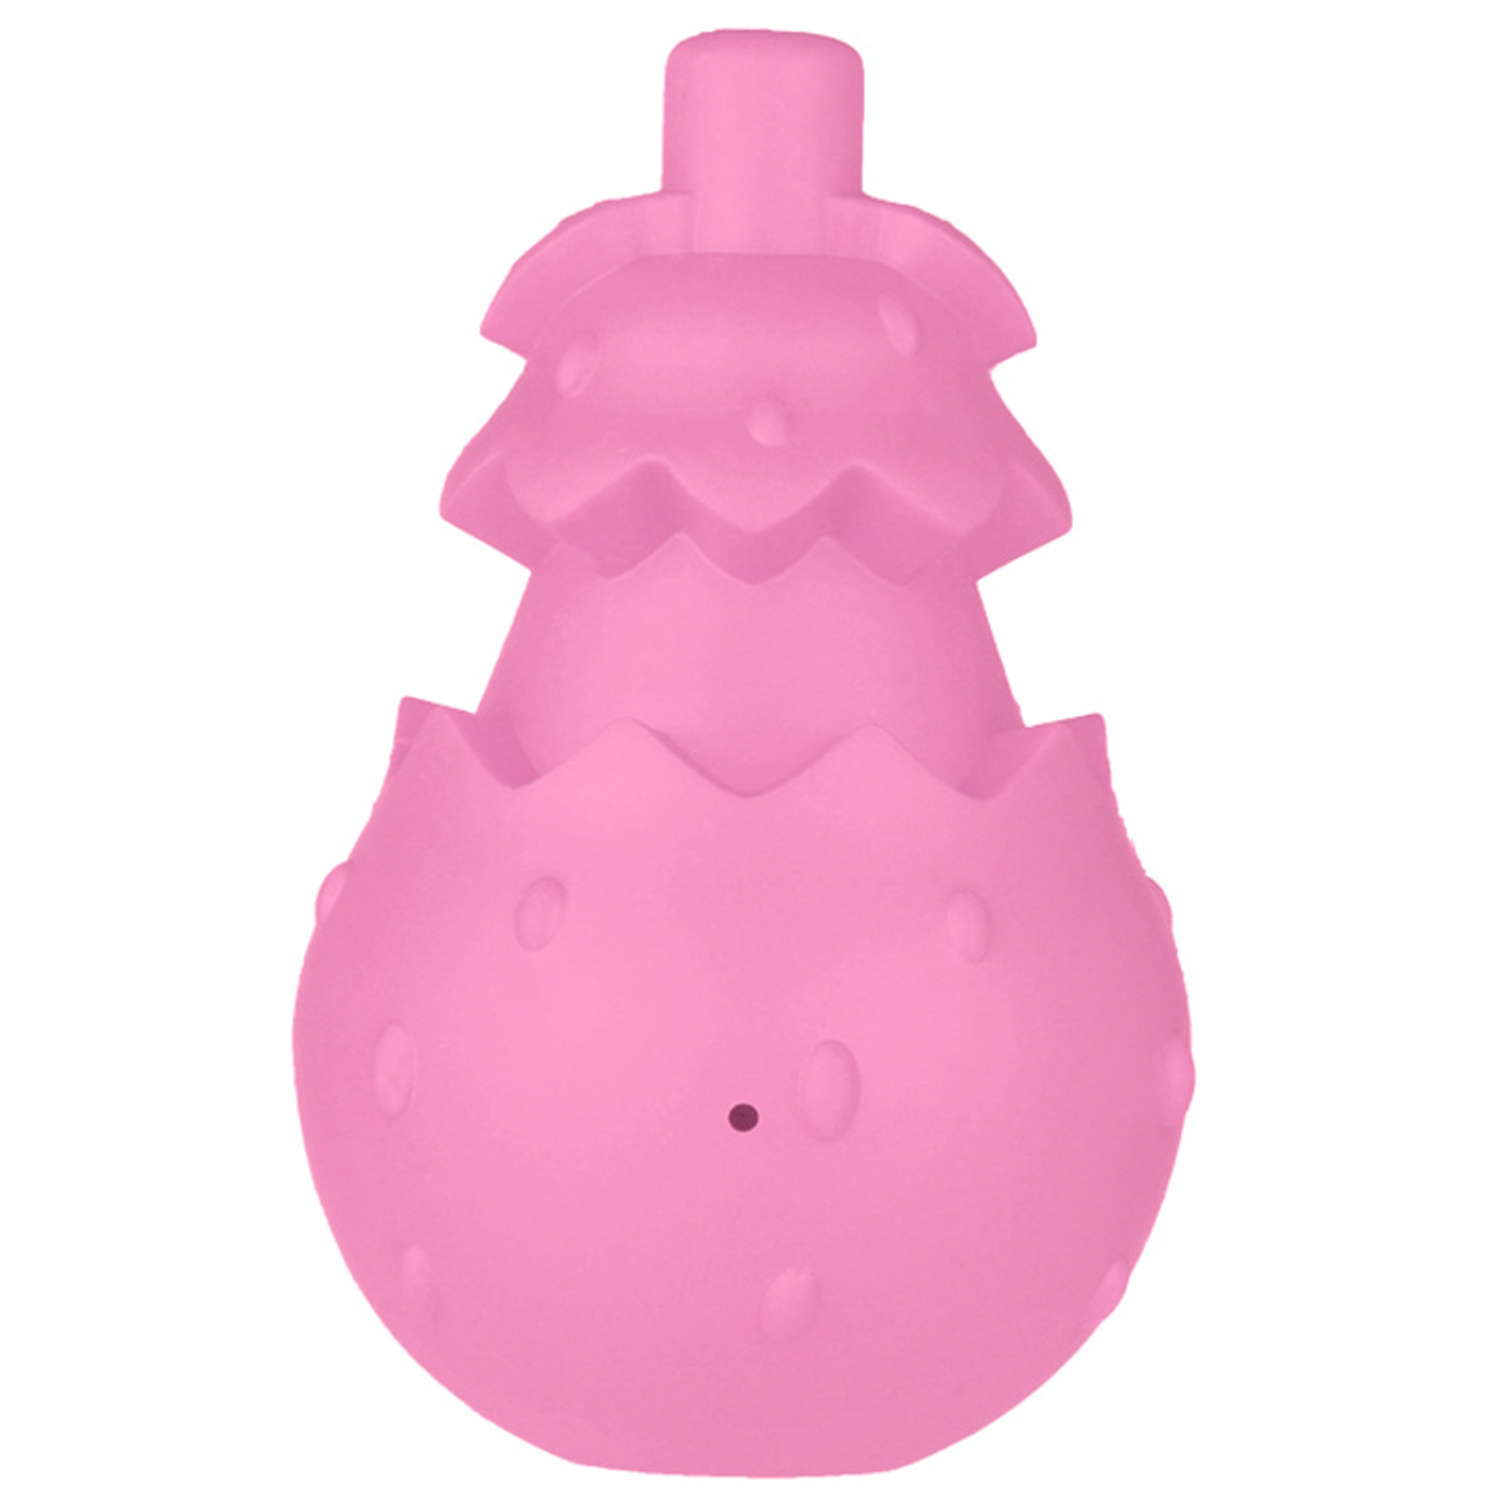 Mr.Kranch Mr.Kranch игрушка для собак с ароматом бекона, розовая (8х13 см) игрушка для собак nylabone копыто экстра жесткое с ароматом бекона